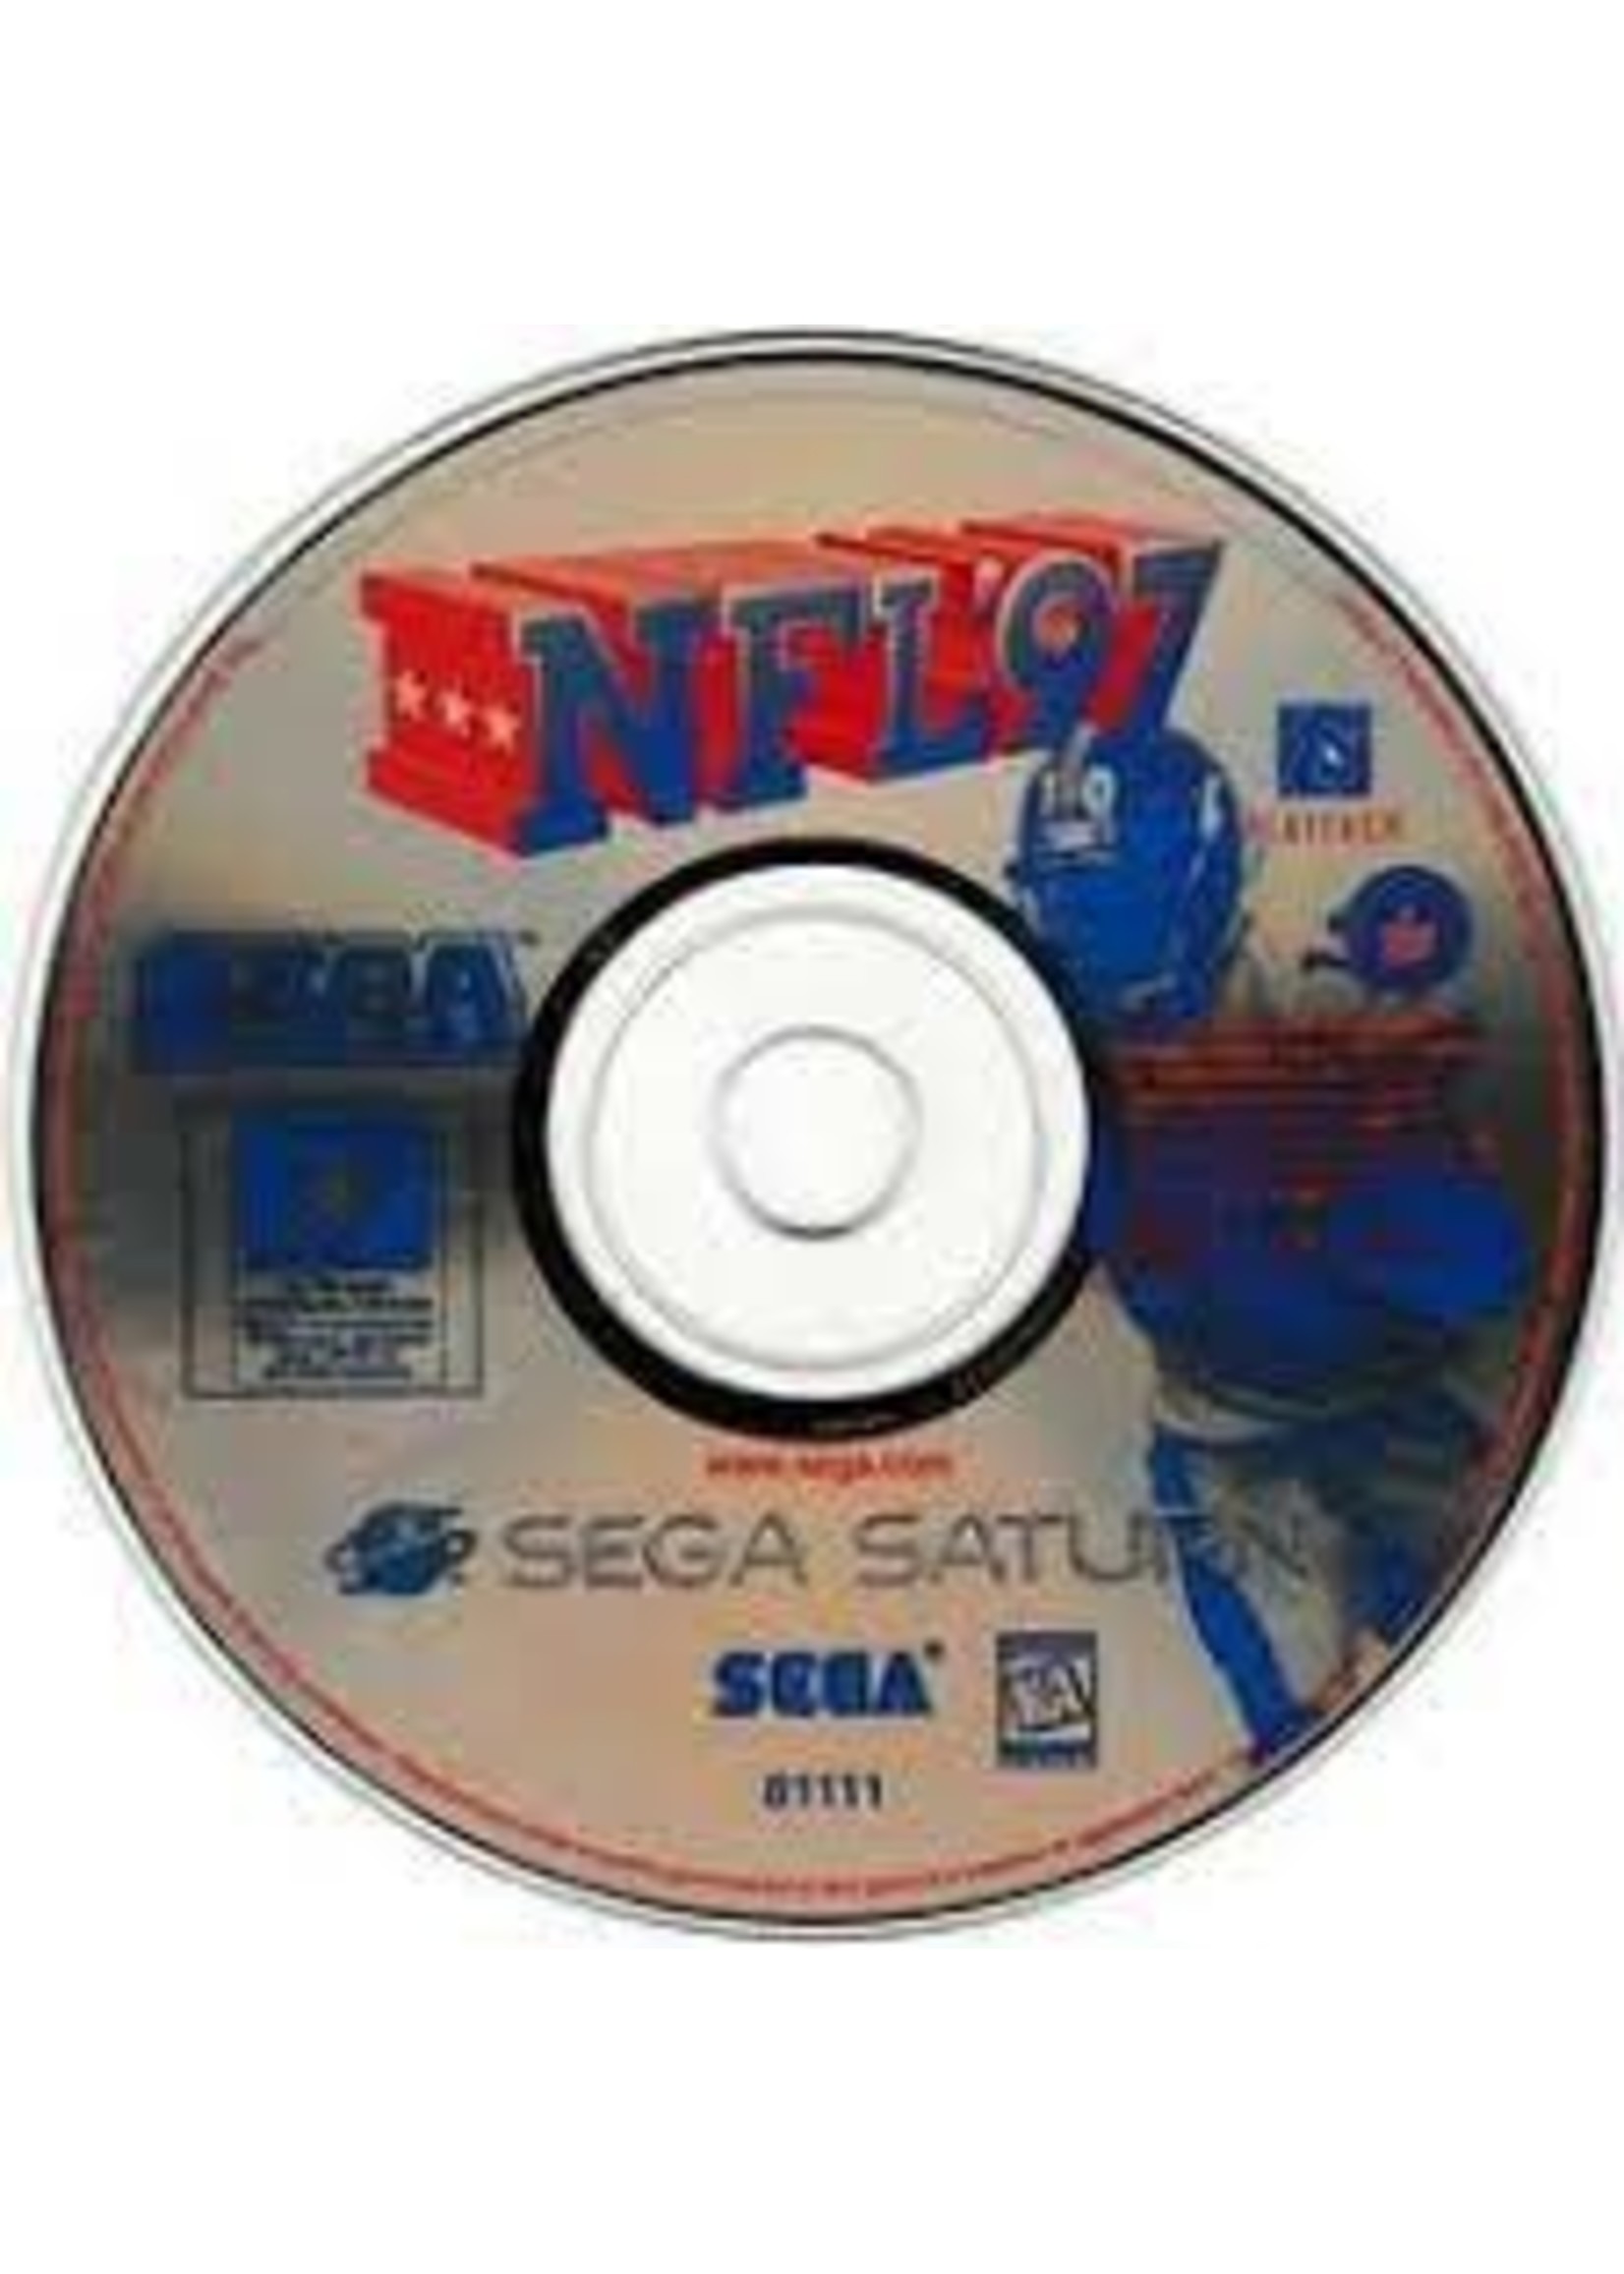 Sega Saturn NFL 97